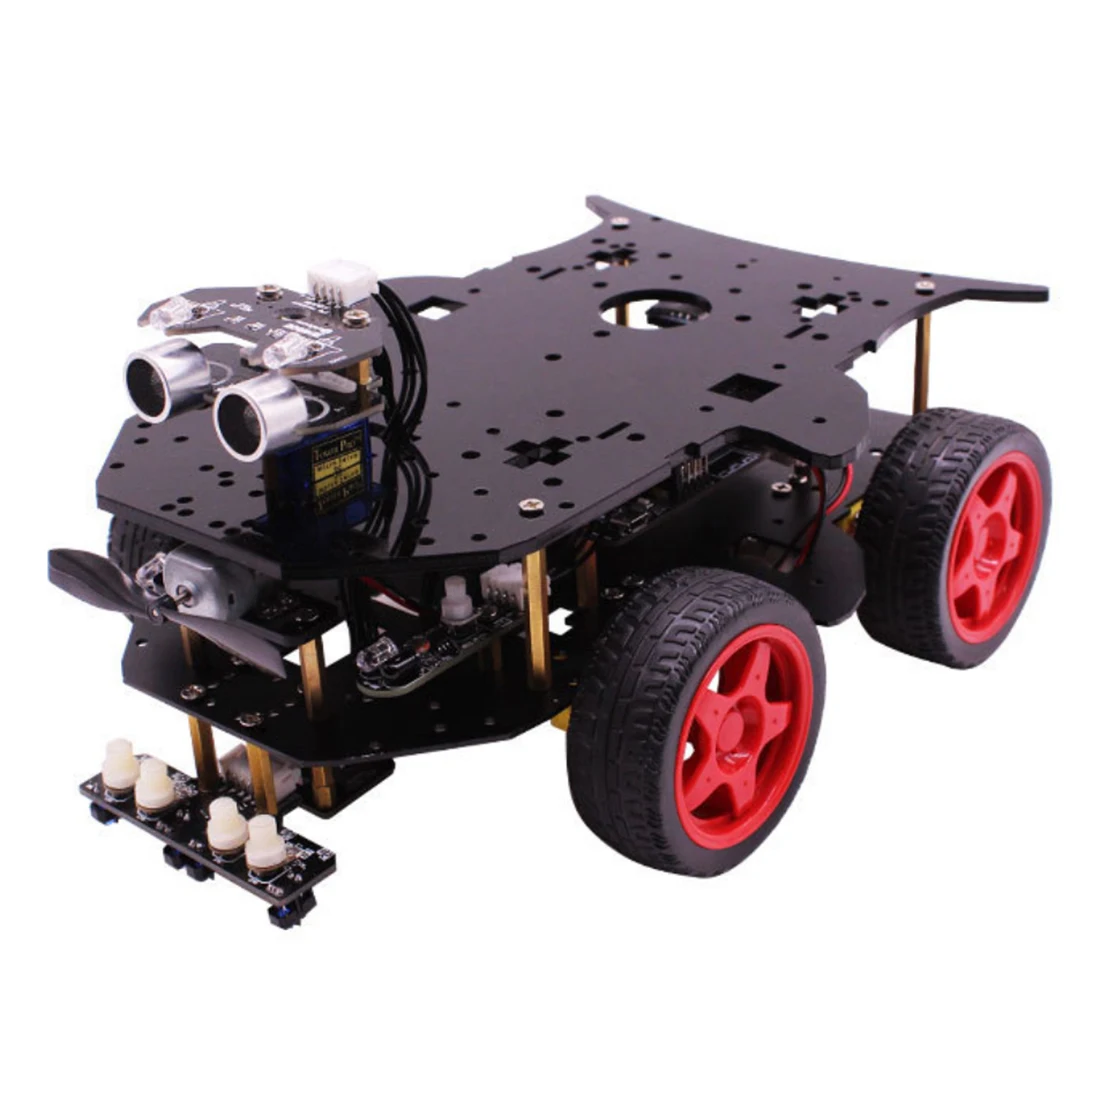 Робот автомобиль 4WD программирования шток образование внедорожных свет отслеживания Робот Игрушки с учебник для Arduino с для R3 плата